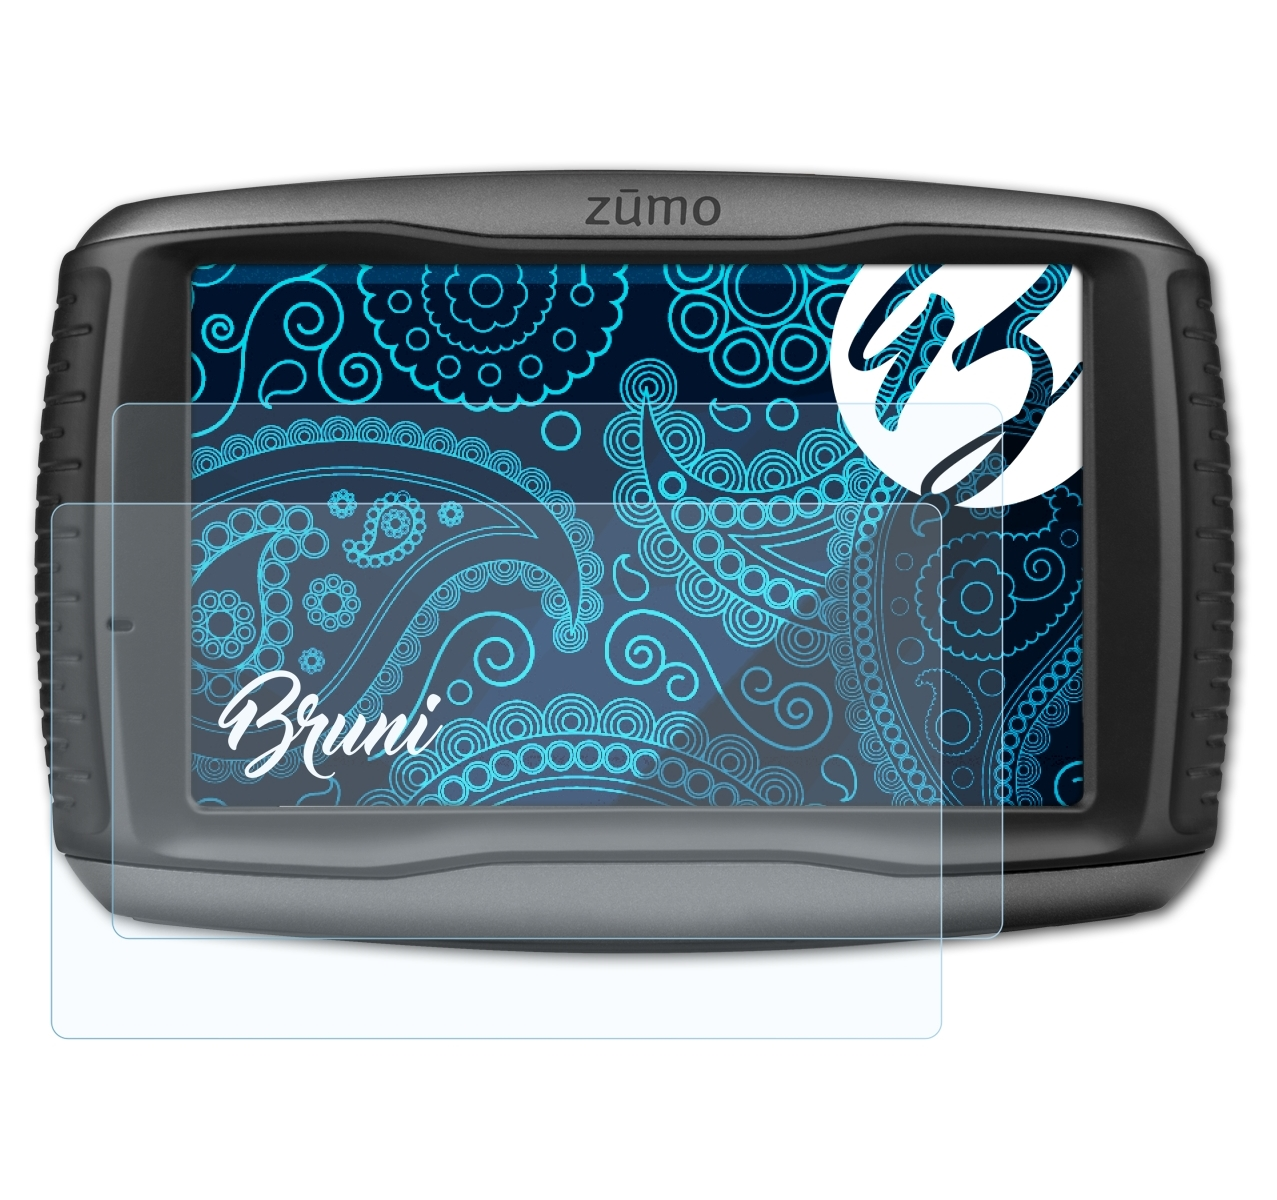 590LM) BRUNI Basics-Clear Zumo 2x Schutzfolie(für Garmin